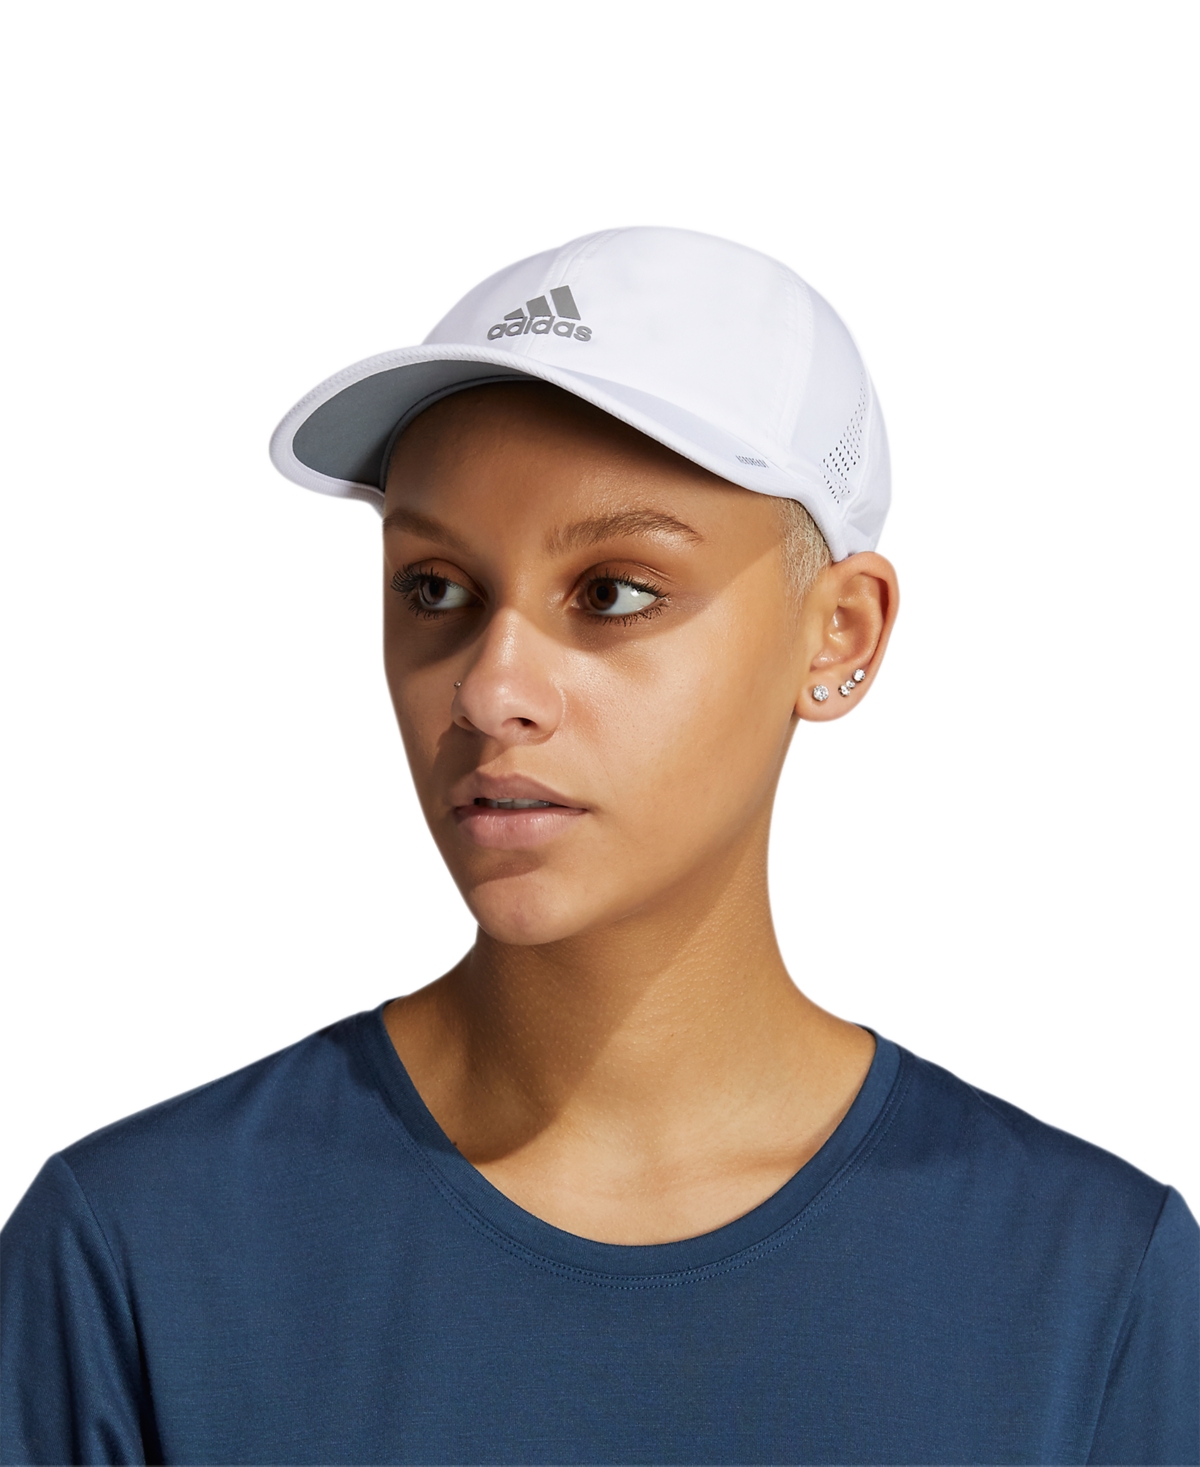 Adidas Originals Women's Superlite 2.0 Lightweight Adjustable Logo Cap In White,silver Reflective